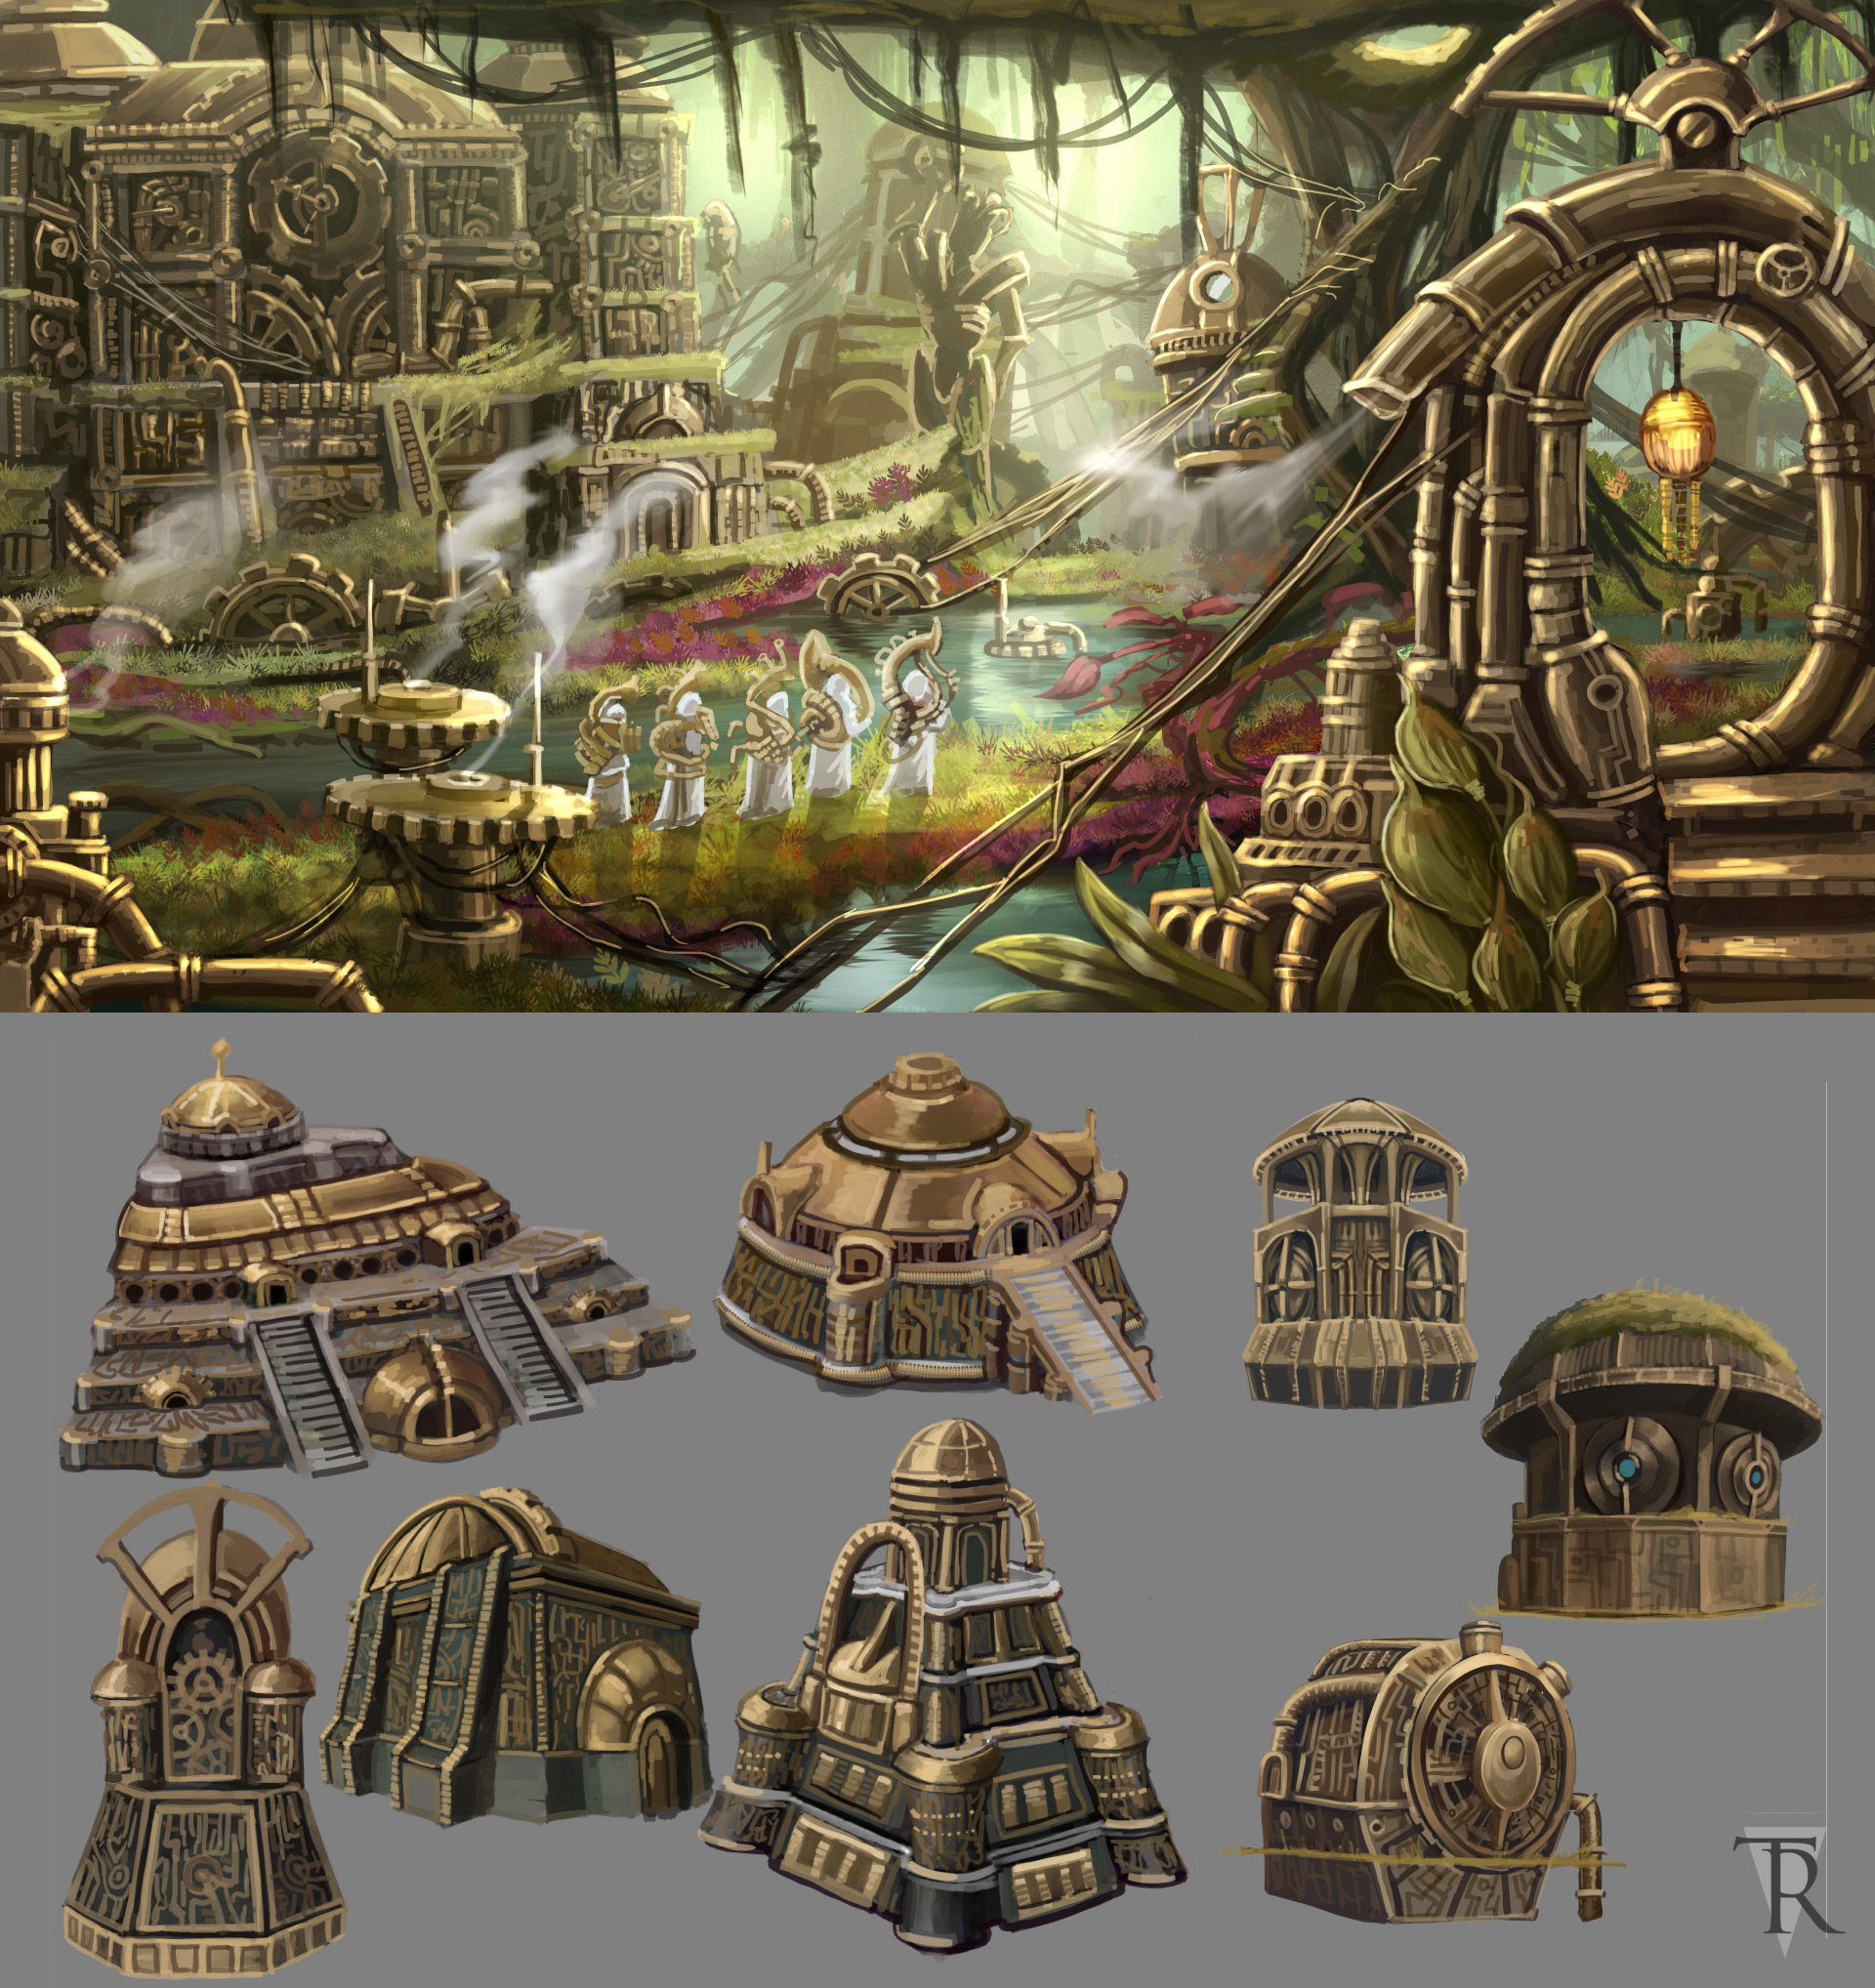 Новые арты от разработчиков мега-мода Tamriel Rebuilt для Morrowind